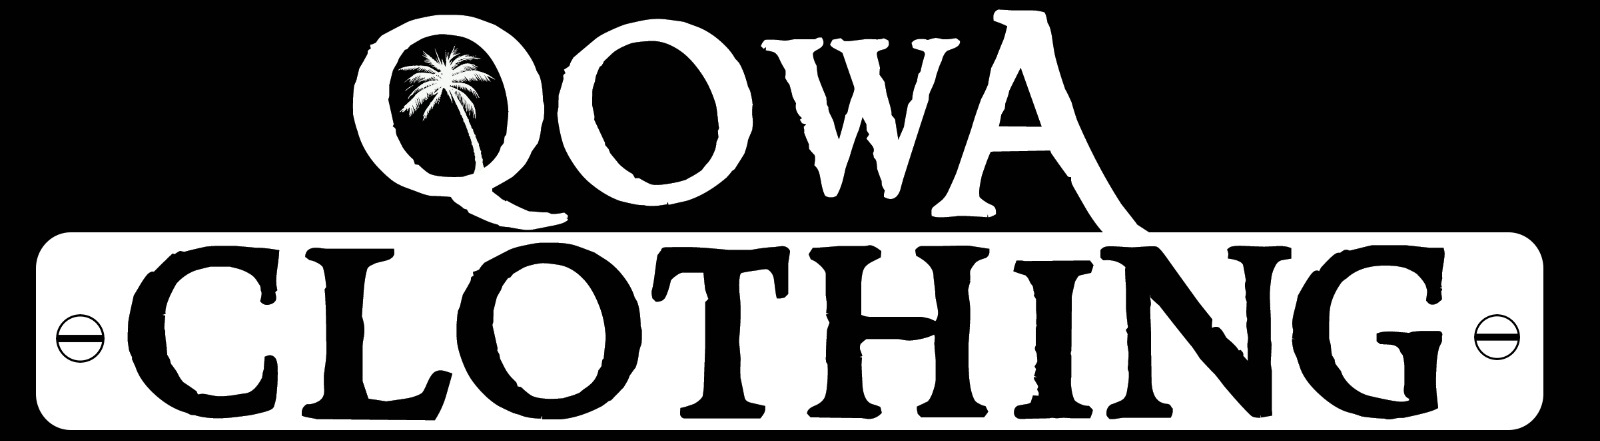 Qowa Clothing 